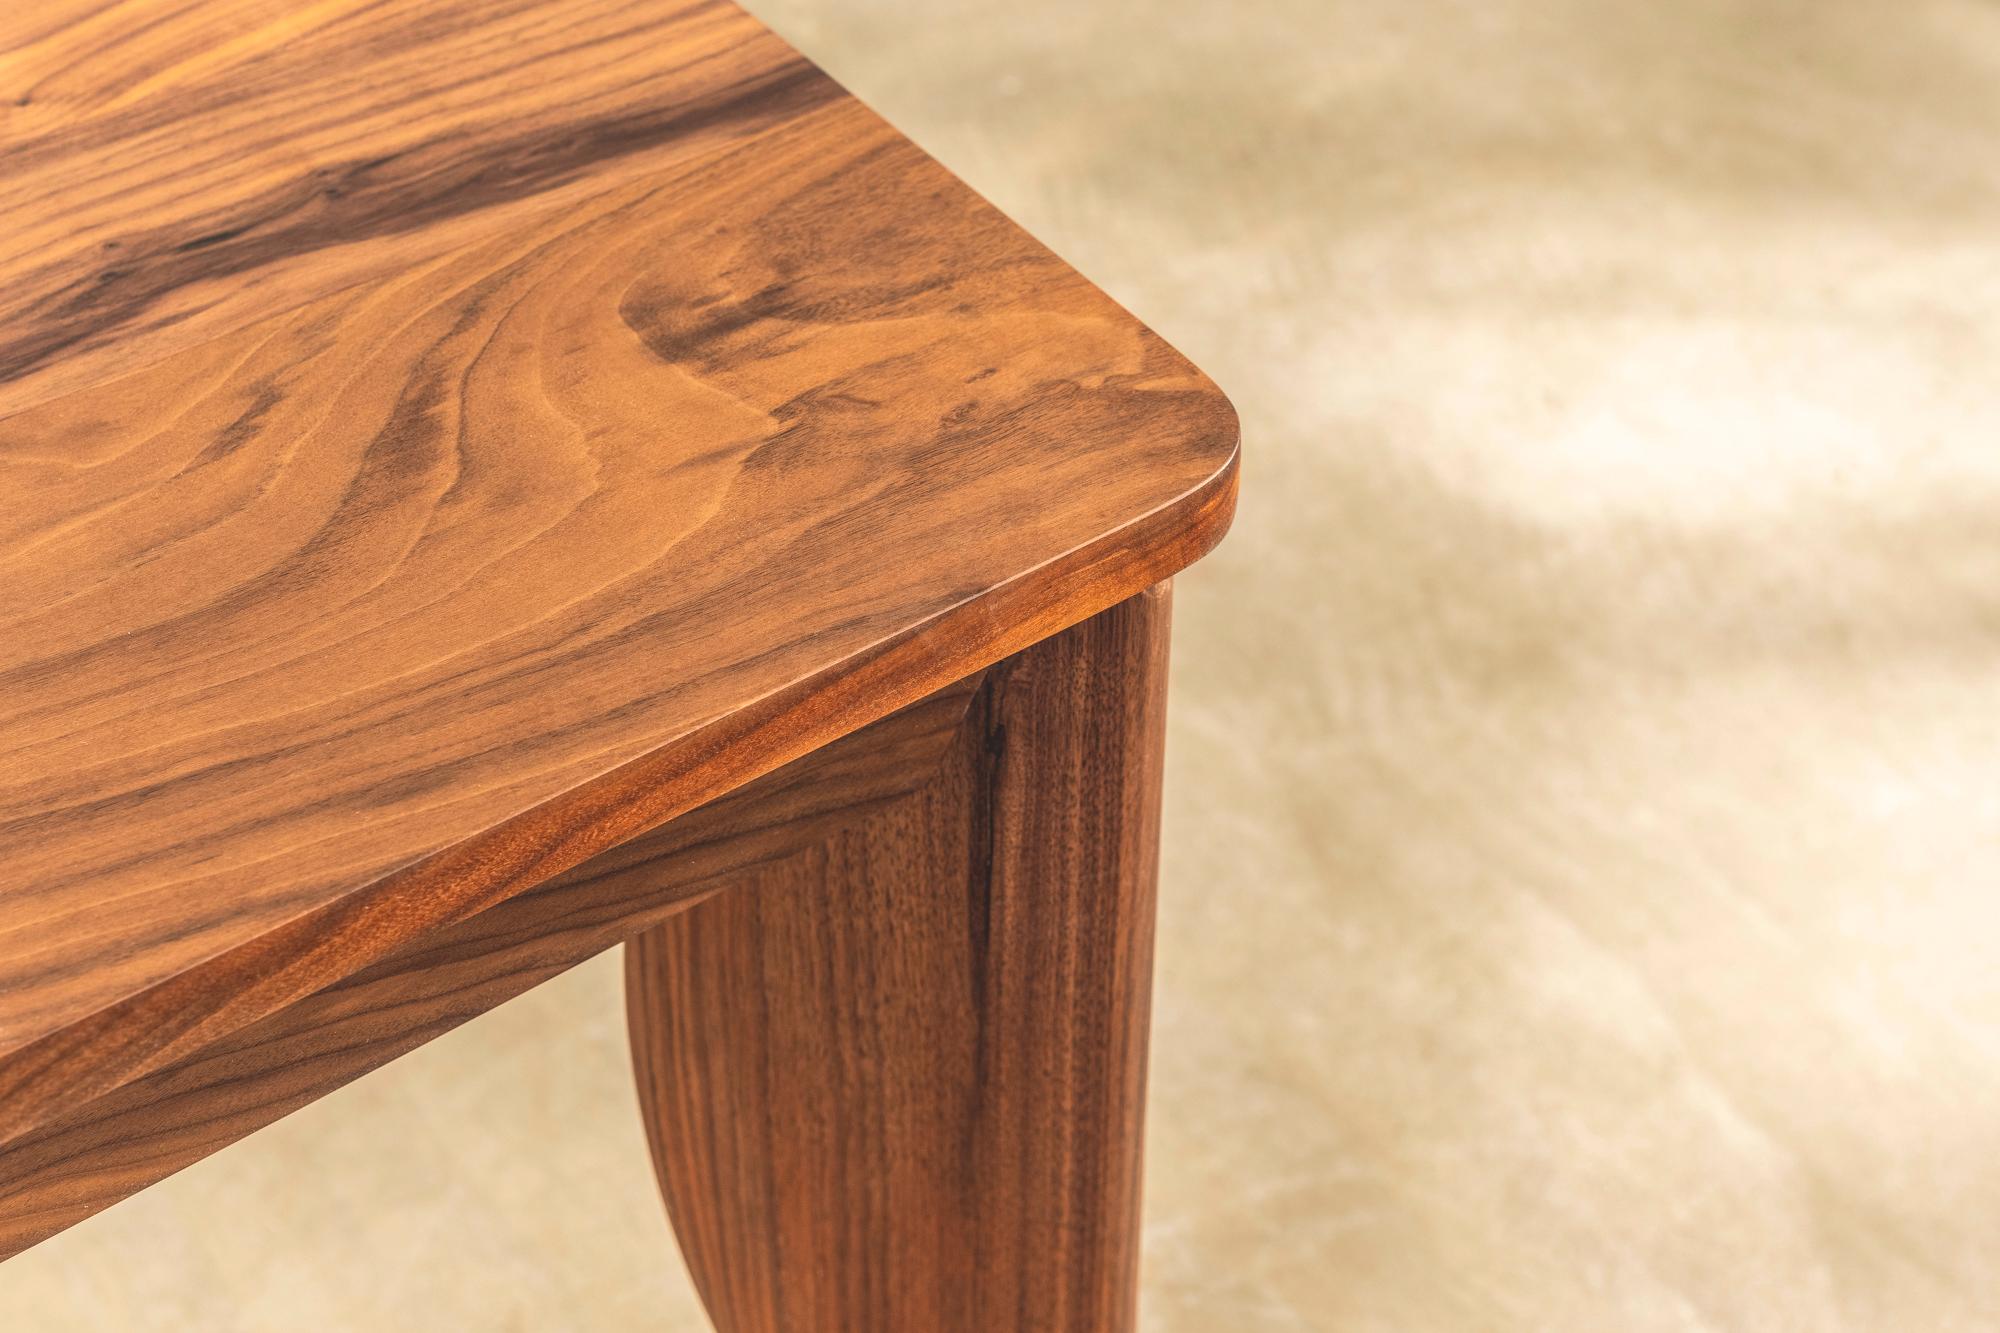 Ein auffälliger Esstisch und ein Satz von sechs Stühlen, entworfen von Terence Conran für den Conran Shop. Der Tisch hat geschwungene Beine aus Nussbaumholz und eine Platte aus massivem Nussbaumholz, die mit einem klaren Öl behandelt wurde. 

Die